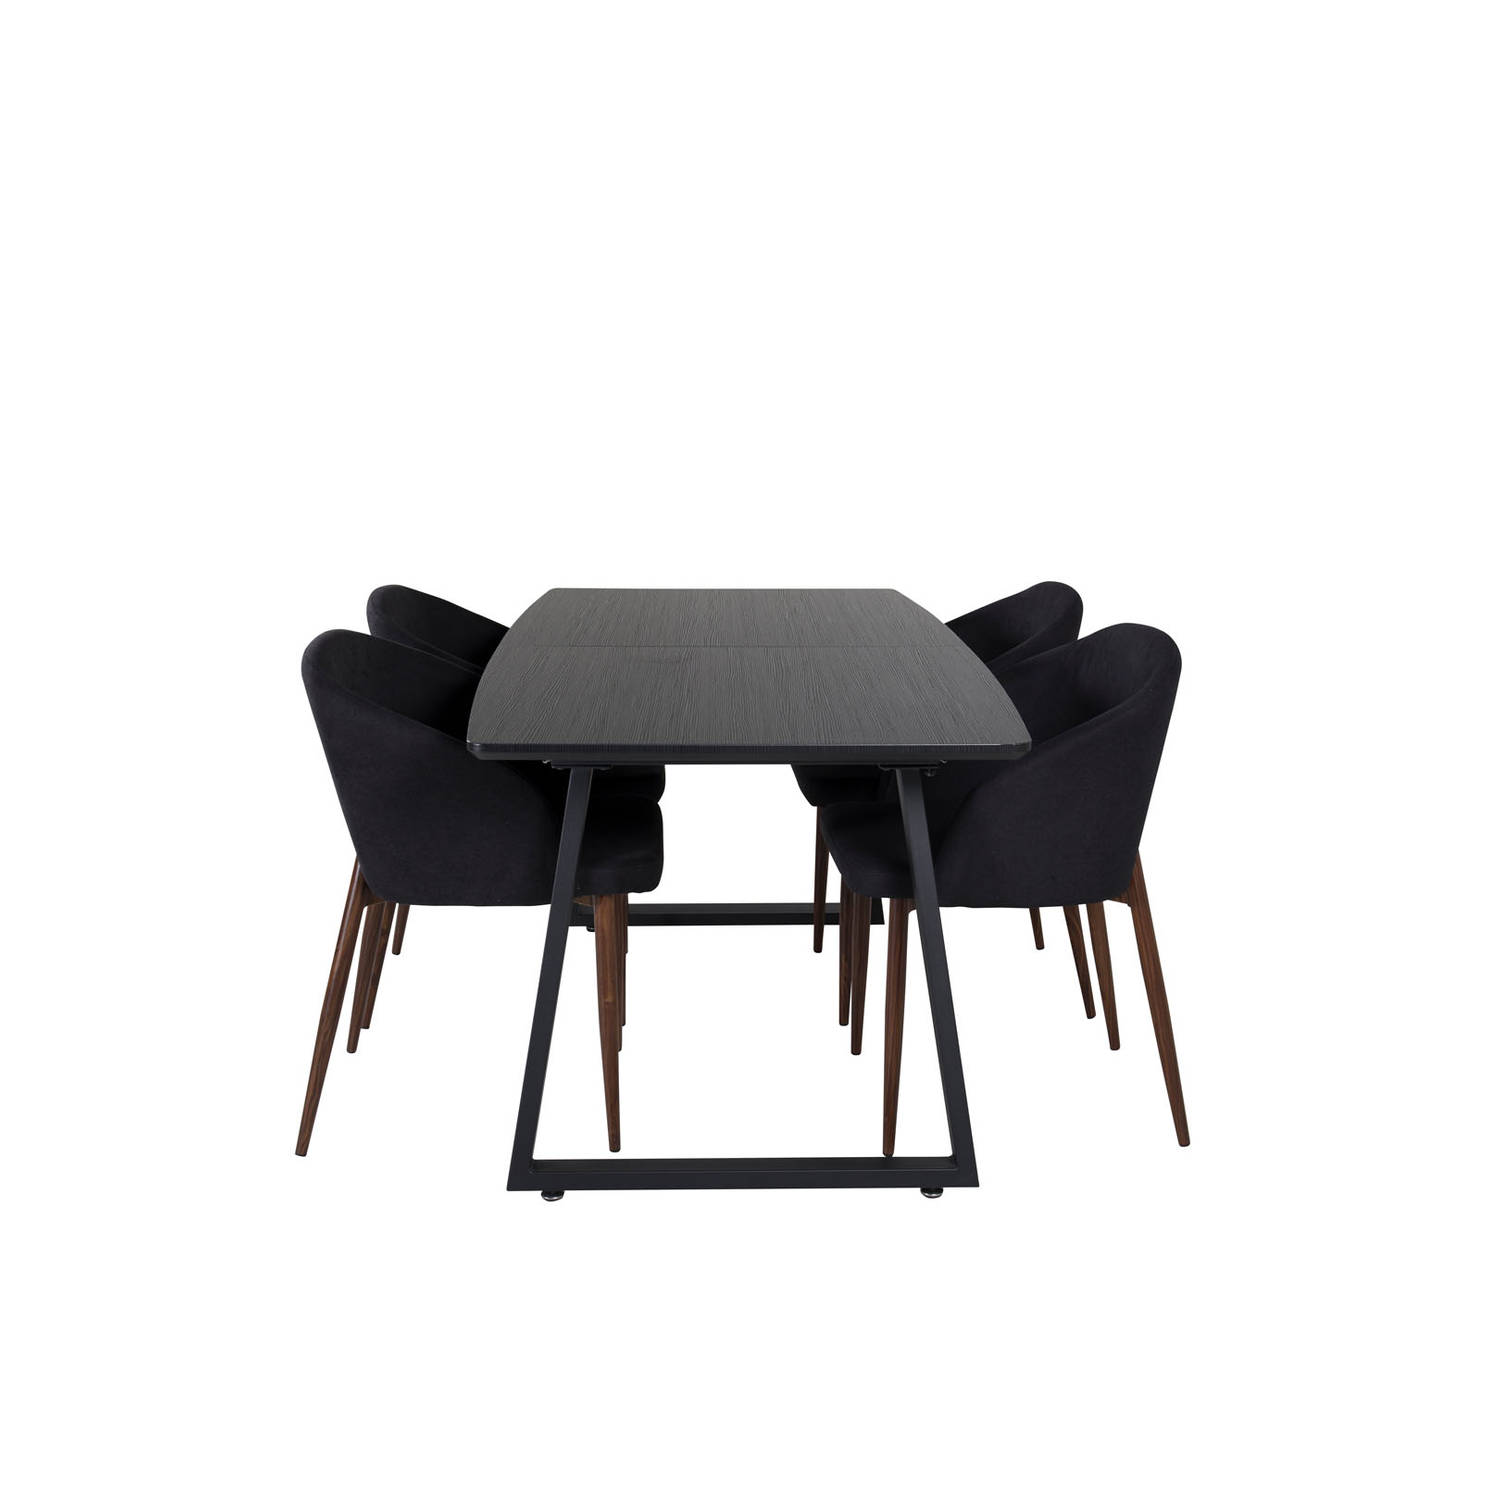 IncaBLBL eethoek eetkamertafel uitschuifbare tafel lengte cm 160 / 200 zwart en 4 Arch eetkamerstal zwart.